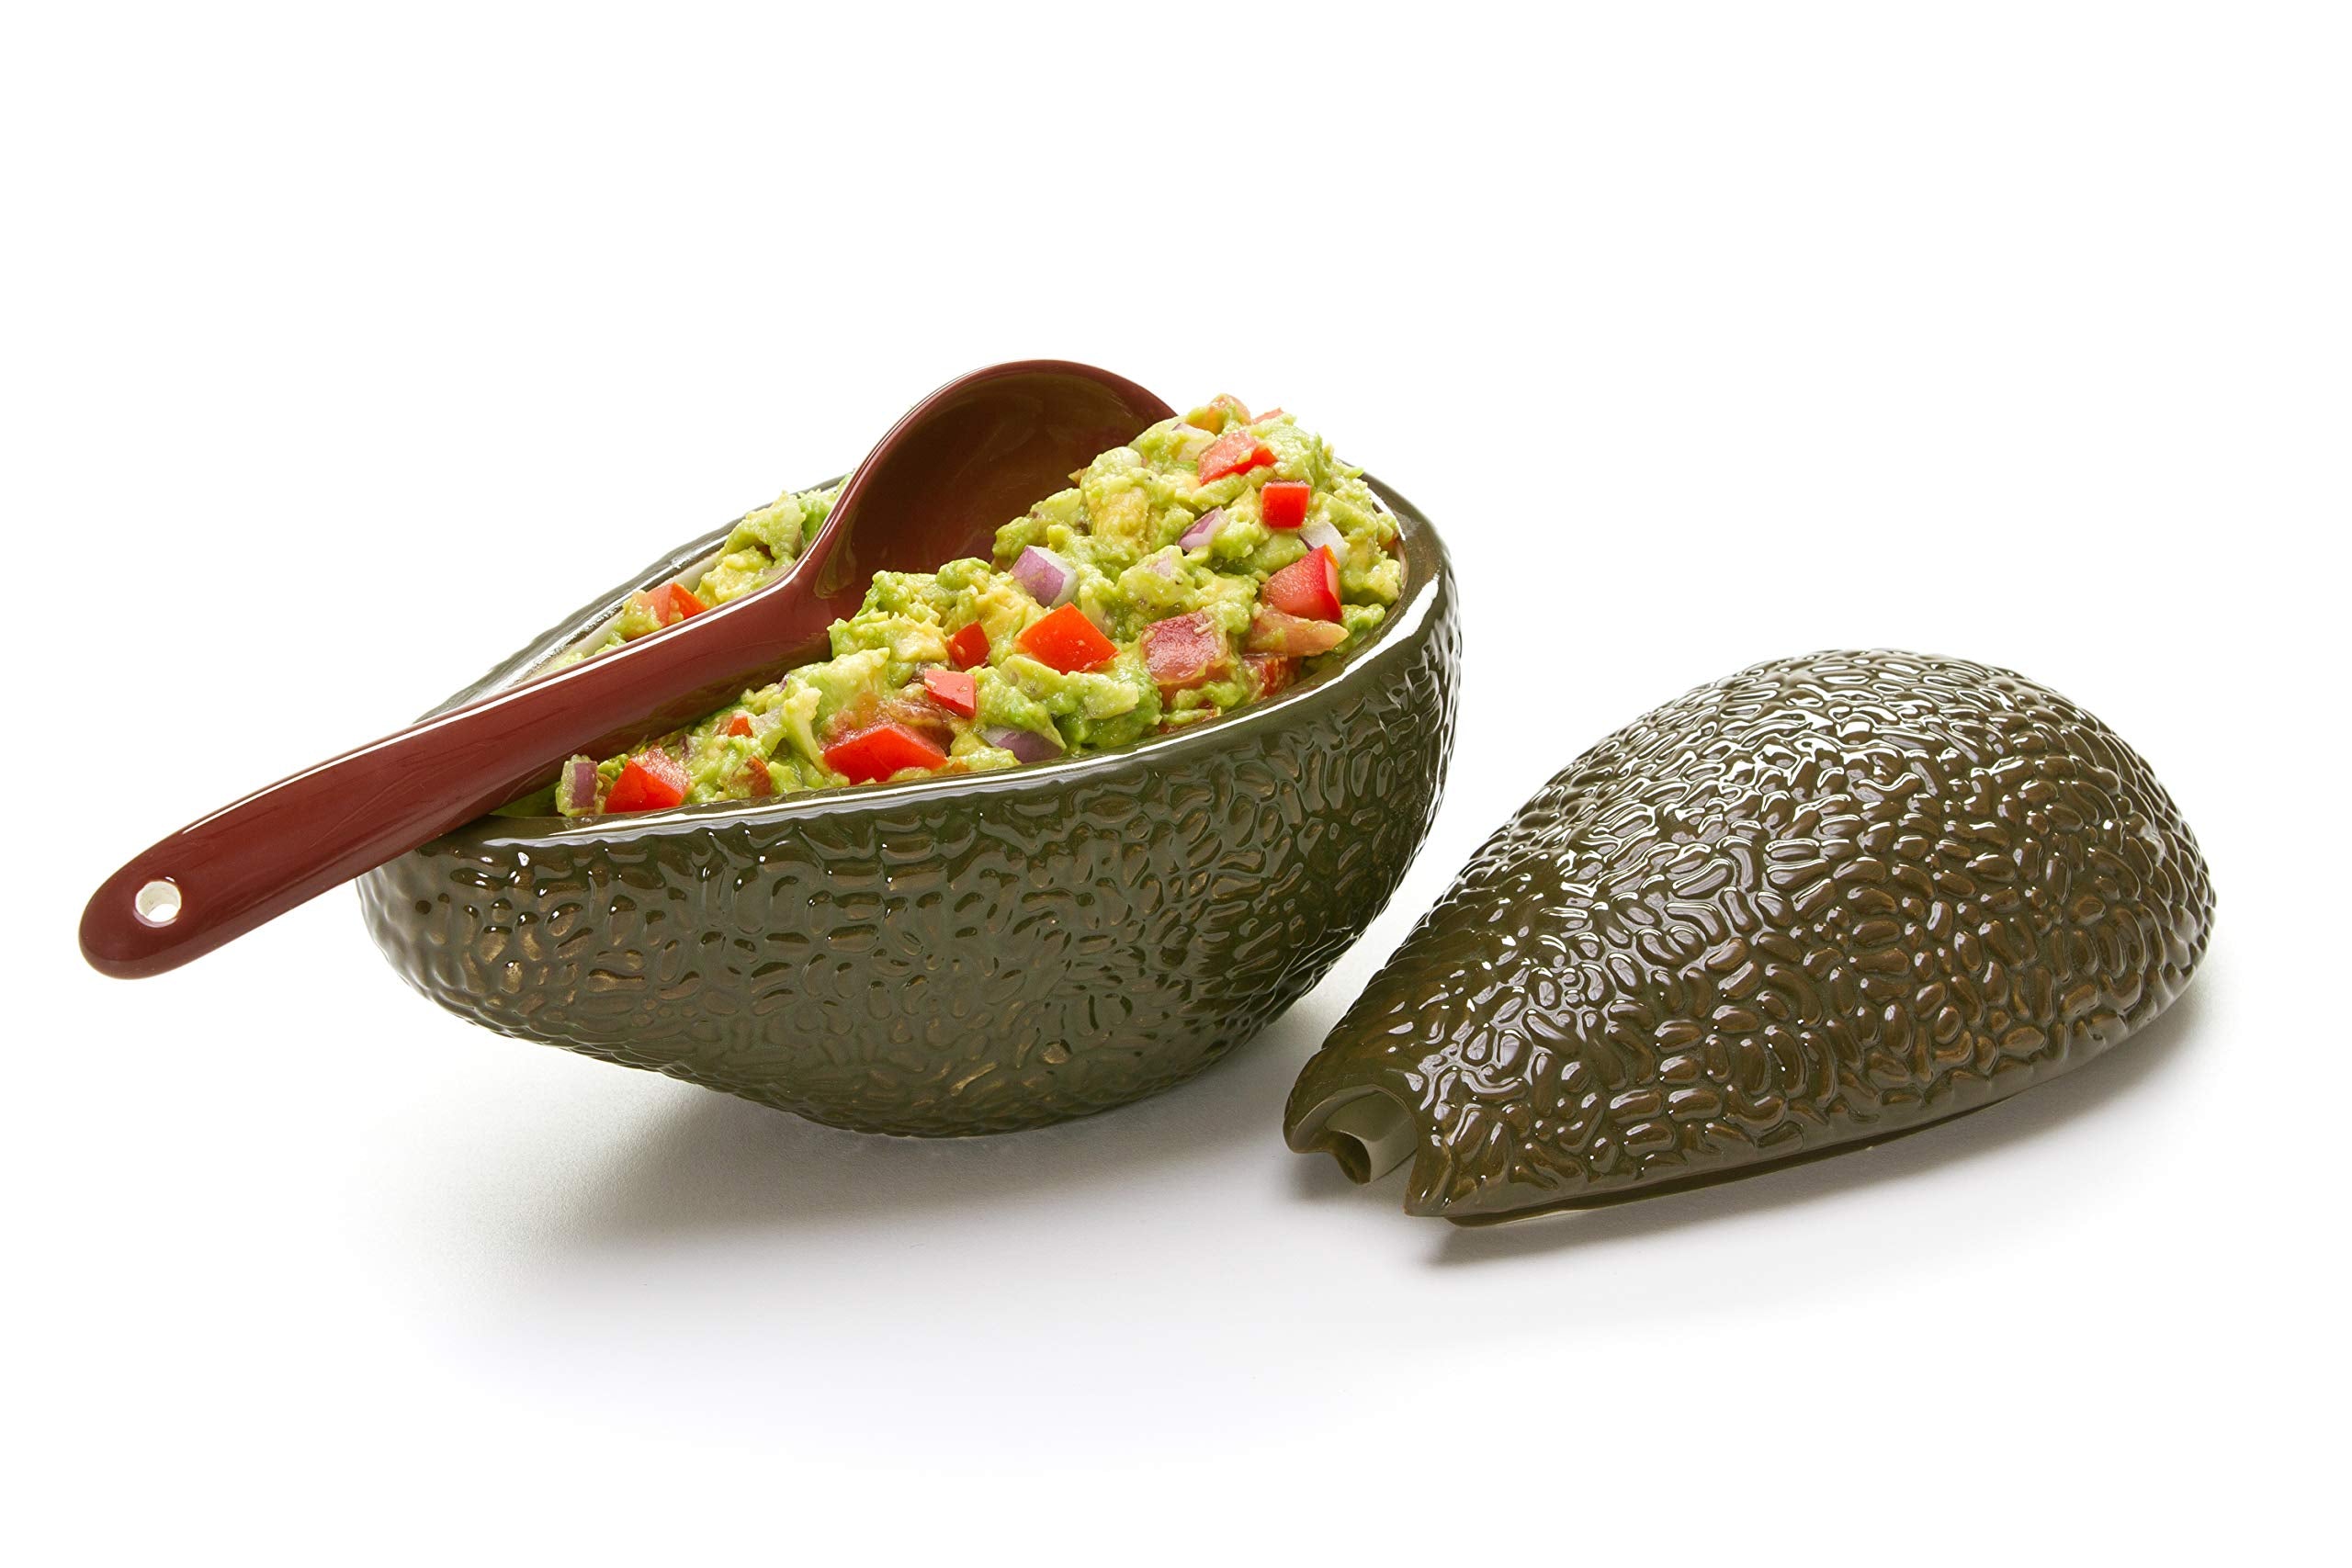 Prepworks by Progressive Guacamole Bowl with Spoon - Great for serving Homemade Guacamole, Avocado Dip, Guacamole Serving Tray , Black, 4